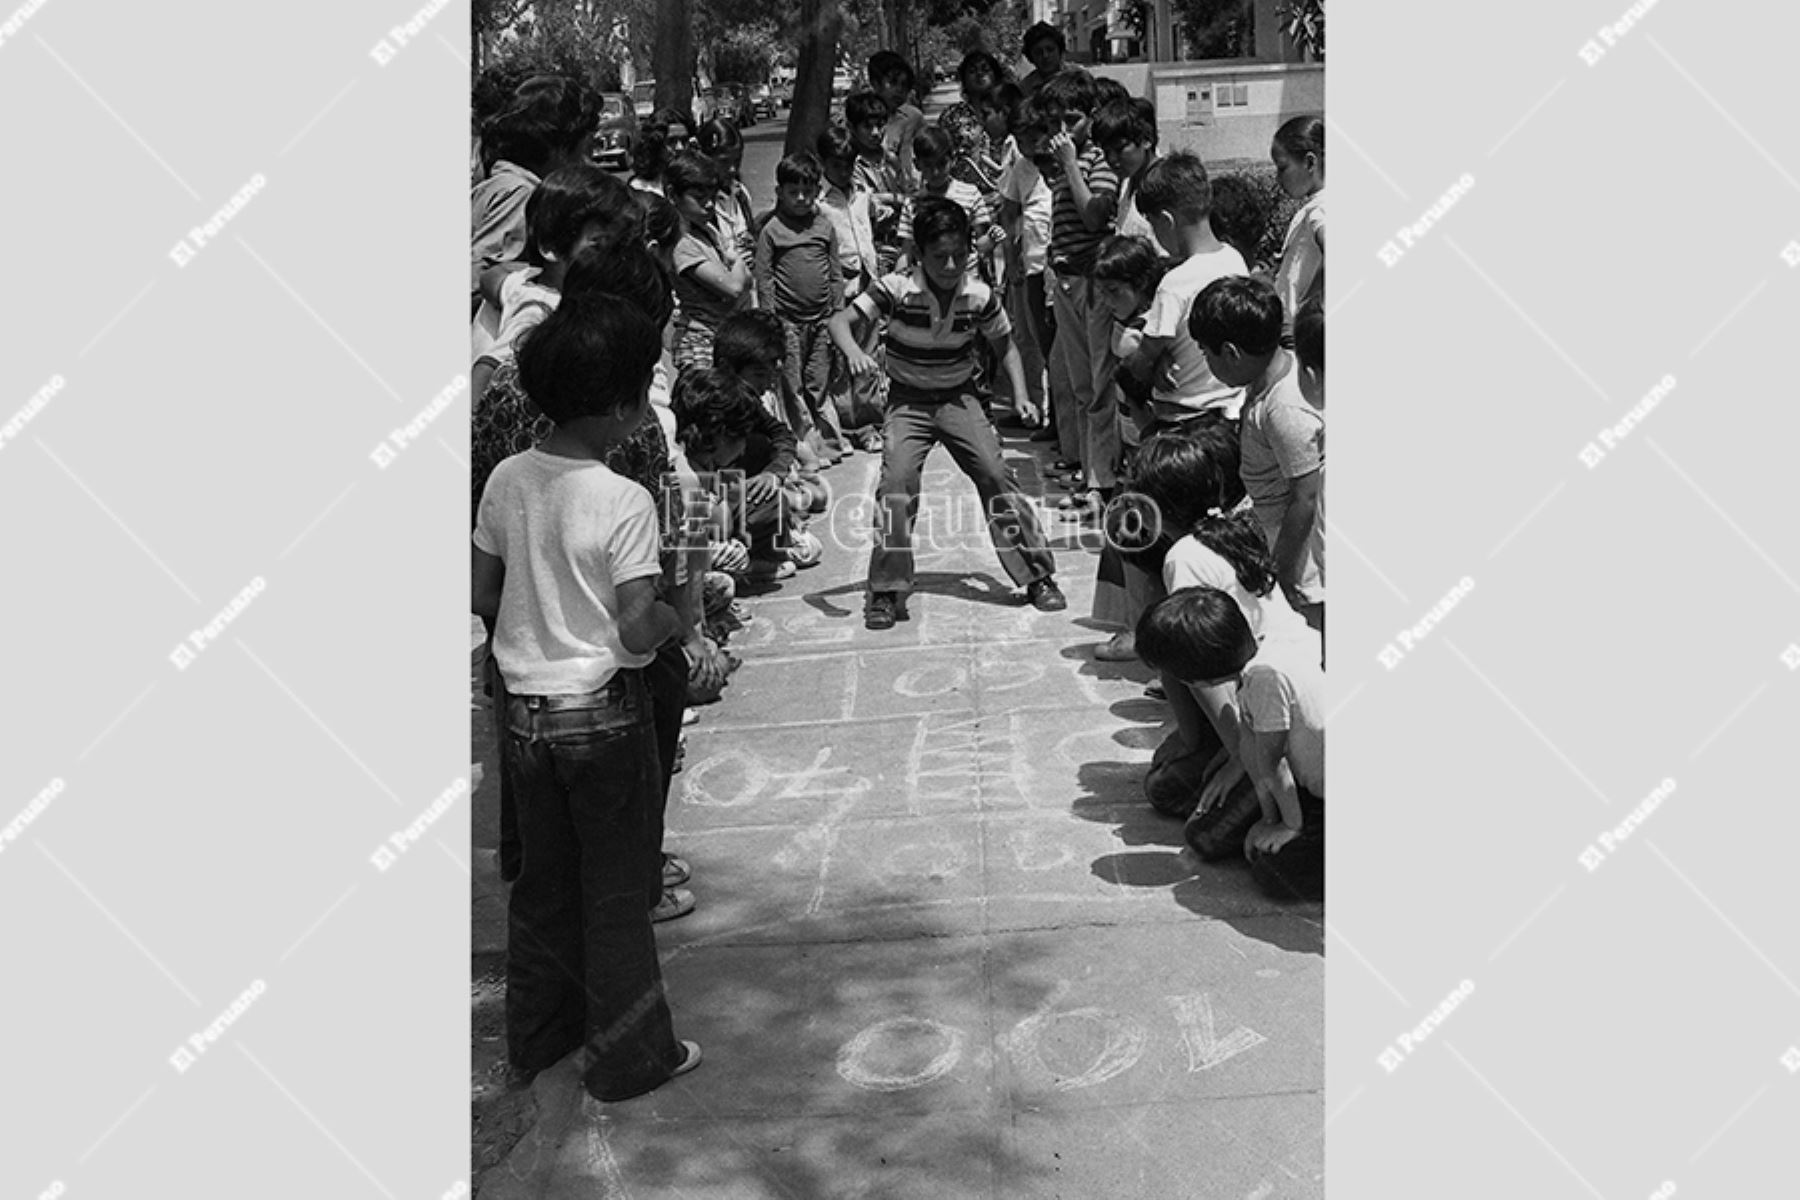 Lima - 17 diciembre 1974 / Campaña del diario La Crónica "En busca del juego perdido" por los barrios de  Lima para promover  esos juegos que ya entonces parecían escaparse de la memoria colectiva. 
Foto Archivo Histórico de El Peruano / Virgilio Molero.